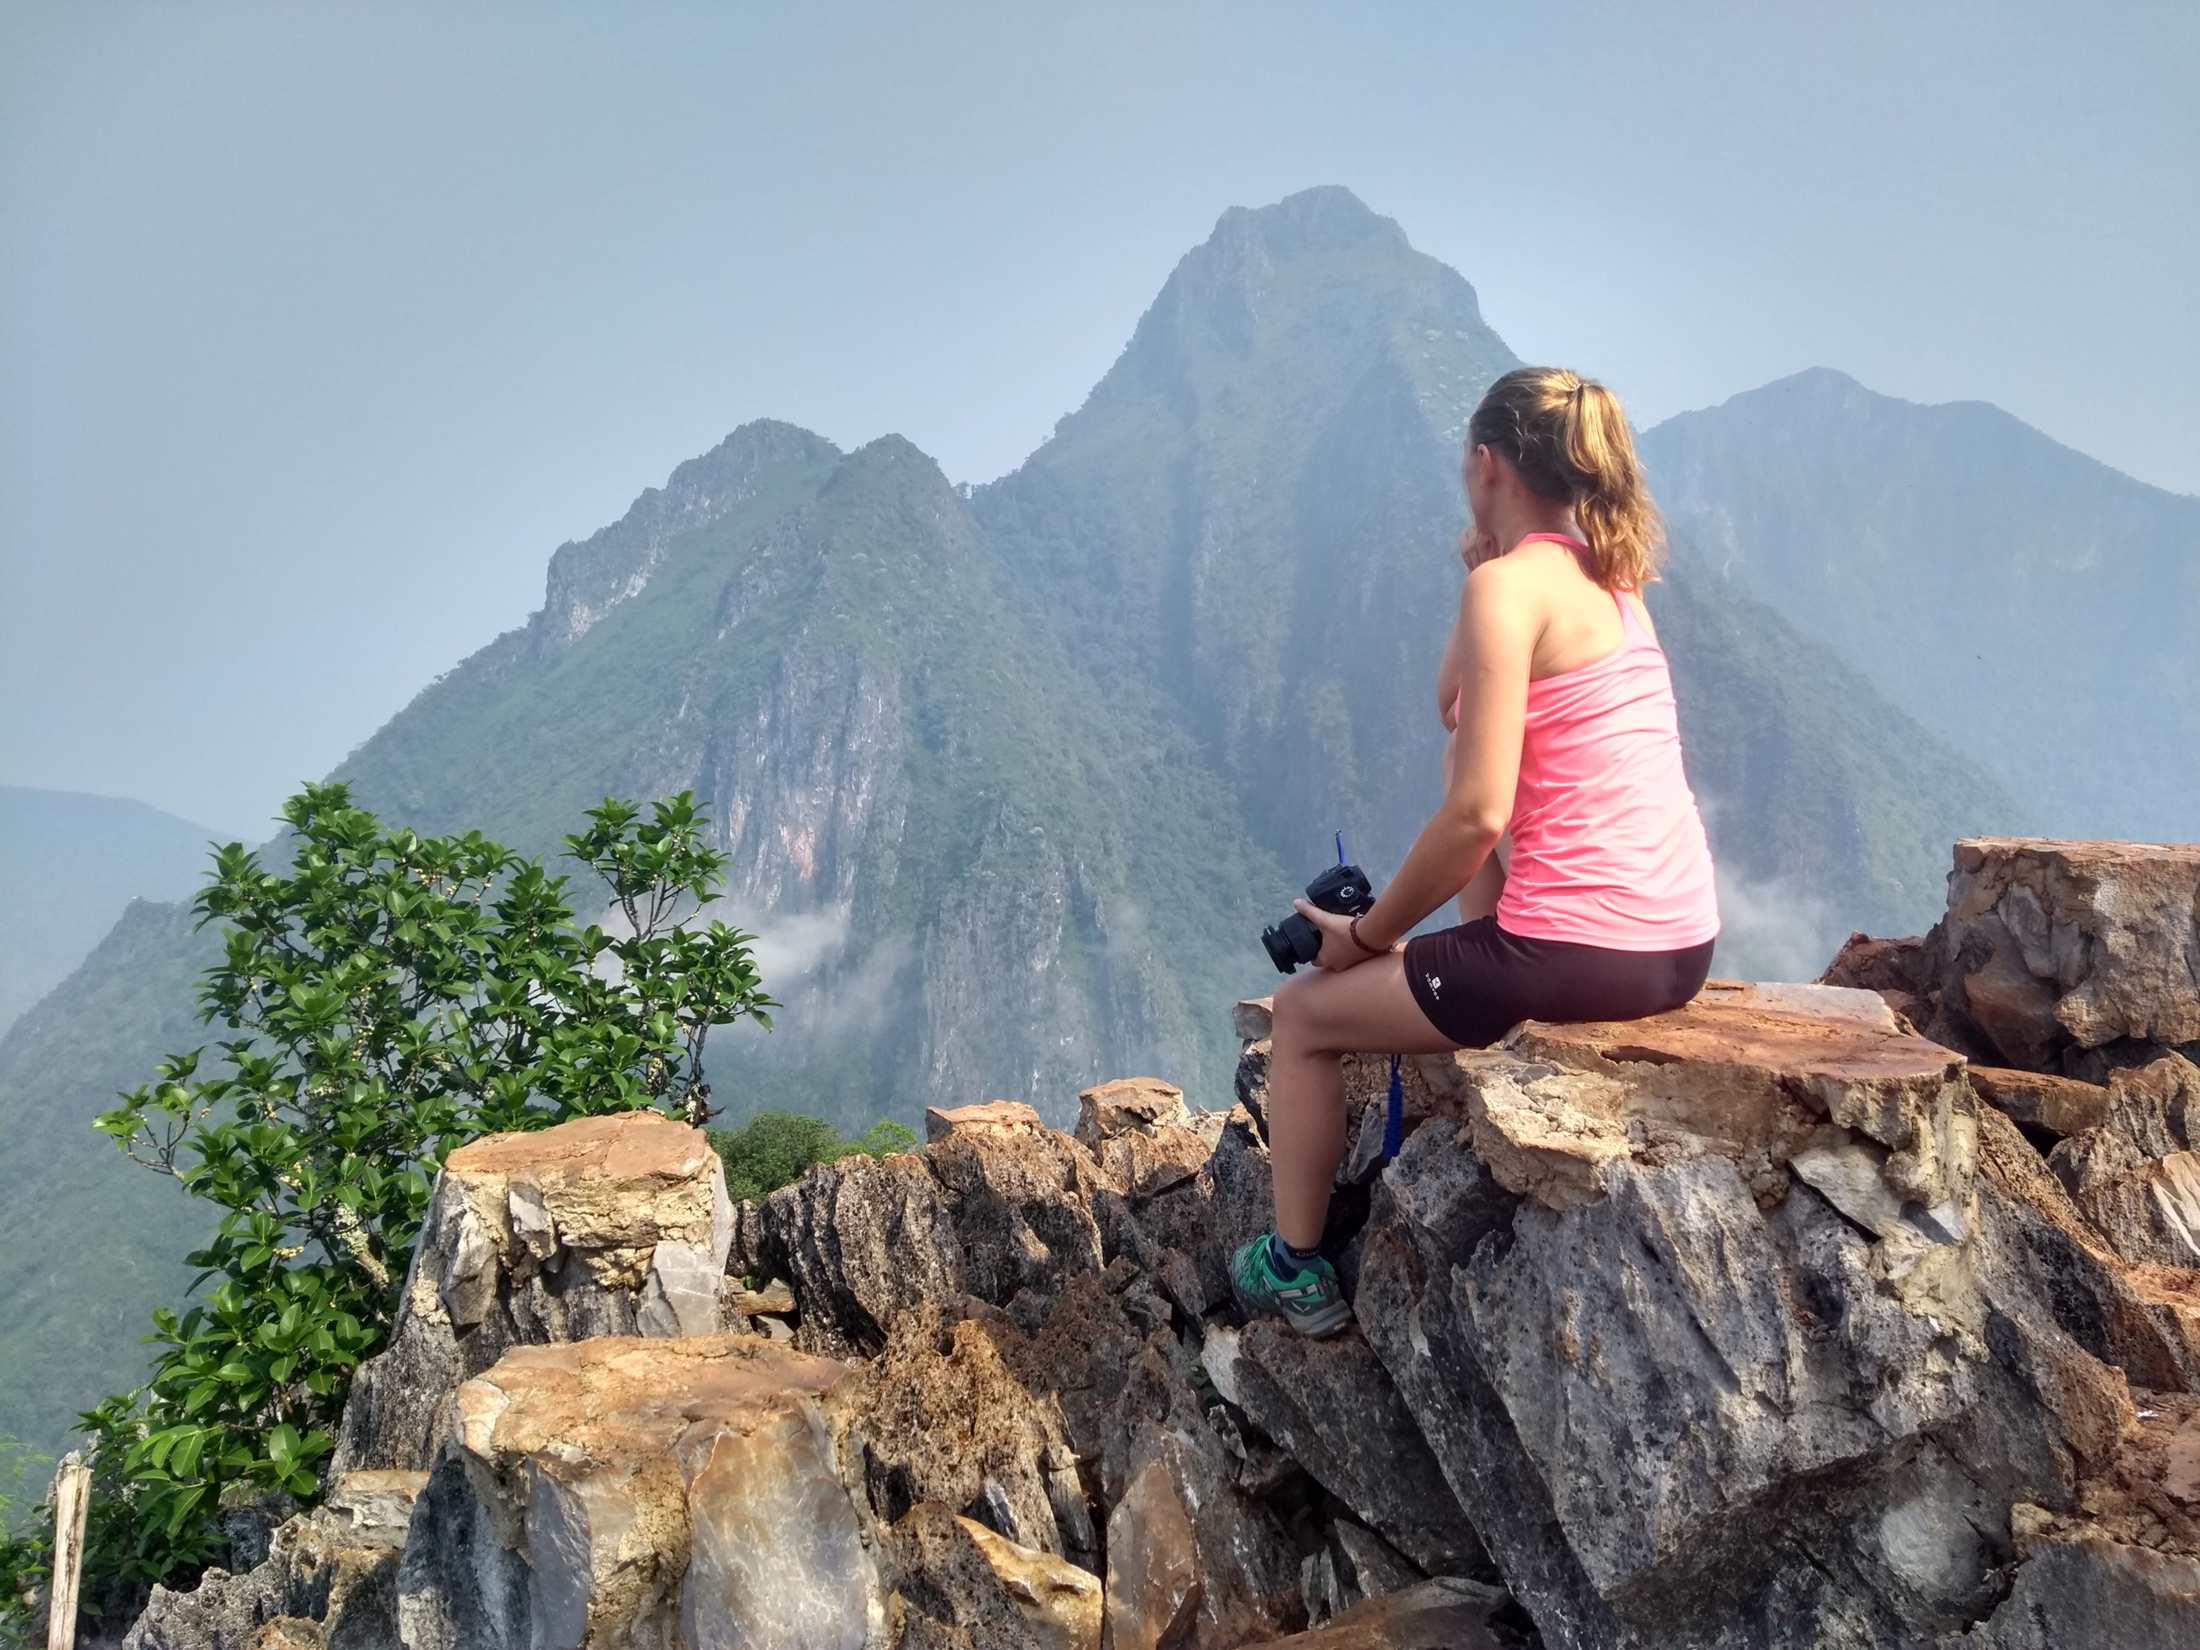 First viewpoint, Pha Daeng Peak.